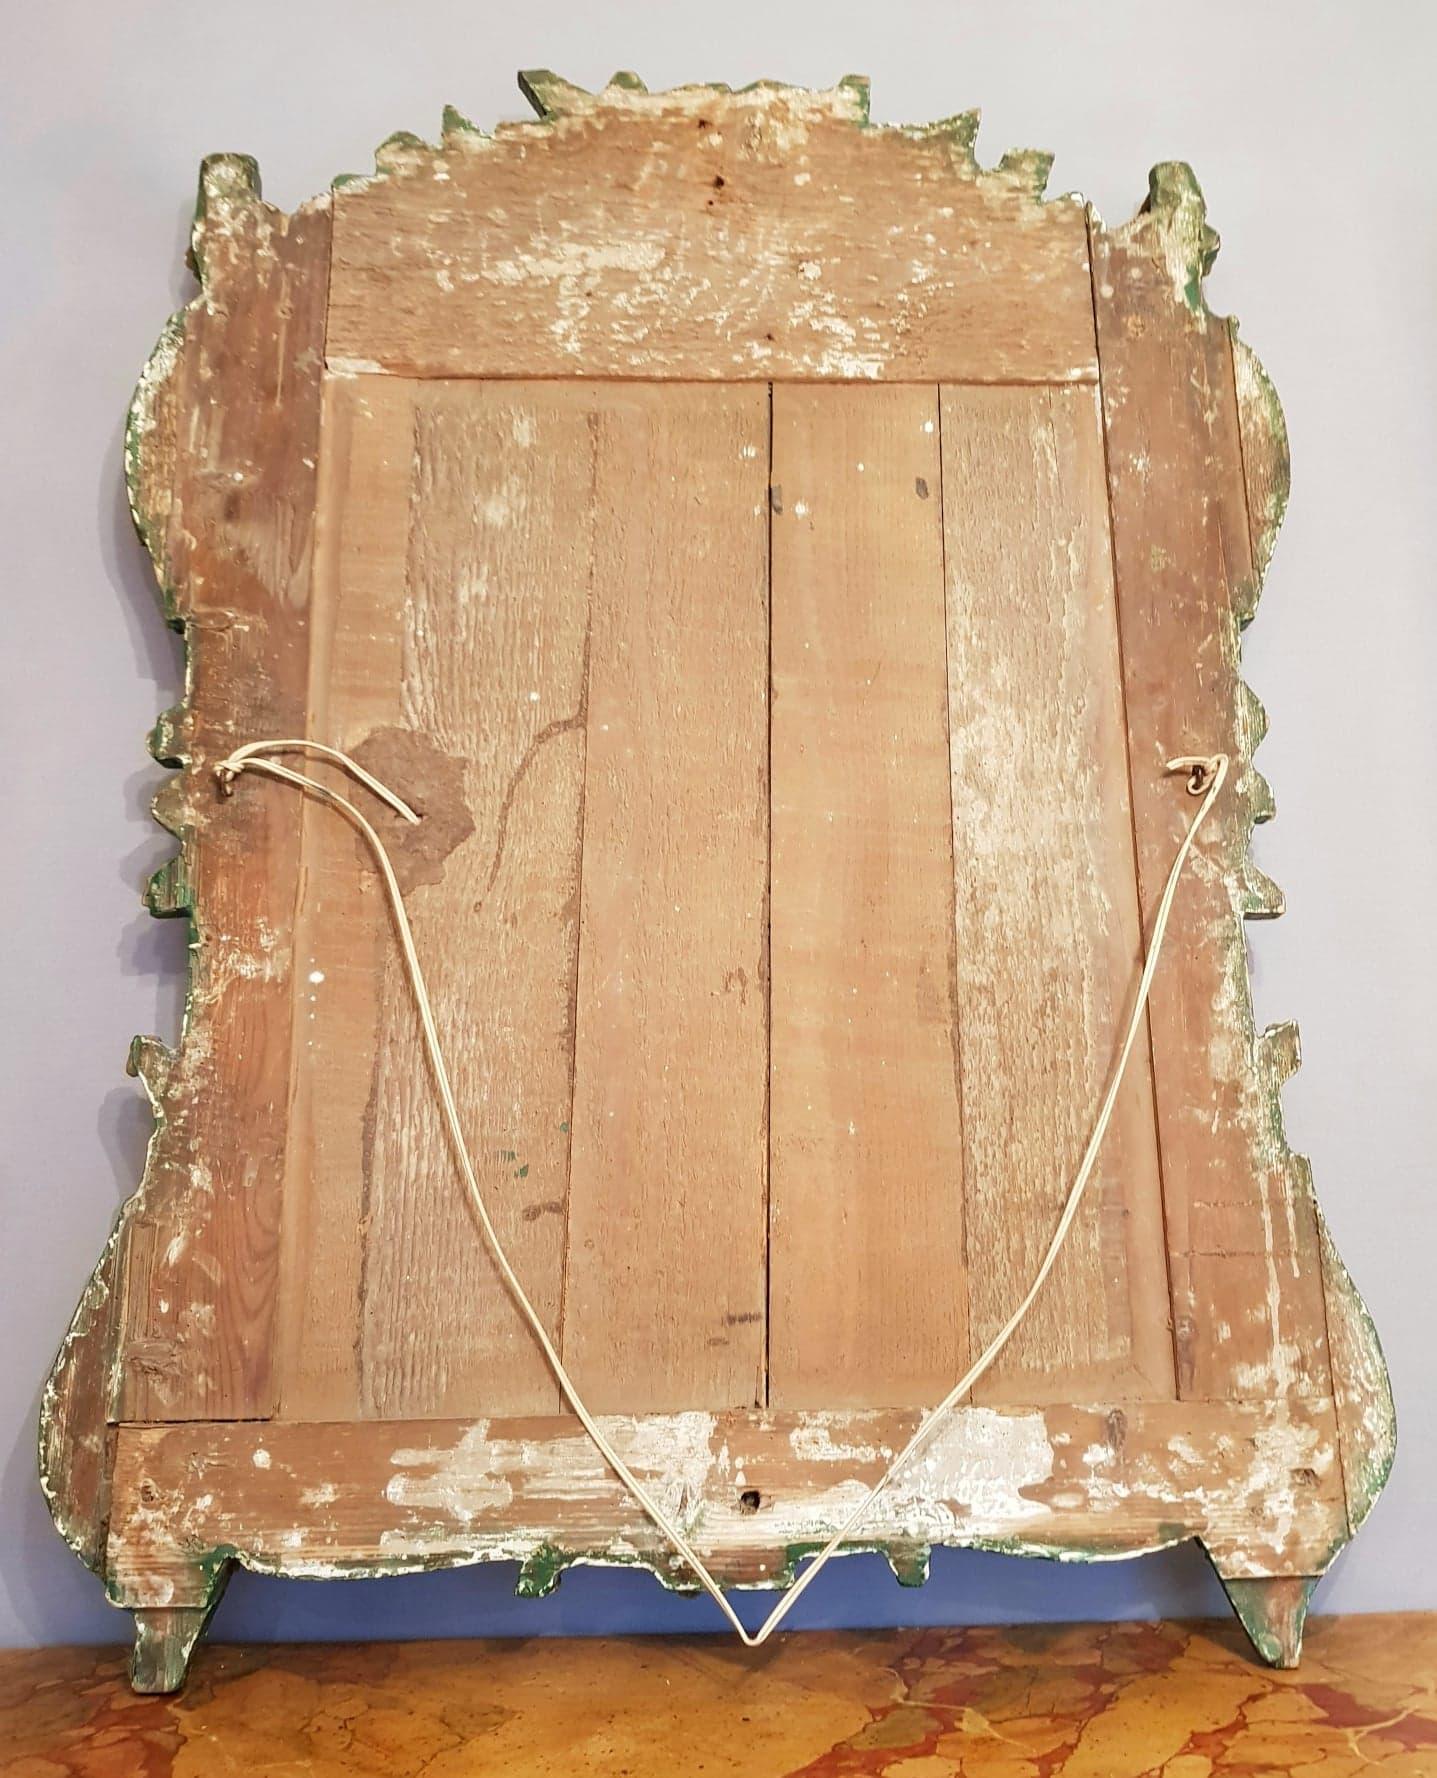 Miroir à fronton d'époque Régence en bois sculpté et doré.
Ce miroir une pièce de belle qualité du début du 18ème siècle.
Le fronton du miroir est joliment sculpté ; il décrit un décors florale, Rocaille, de qualité.
La glace d'origine repose sur